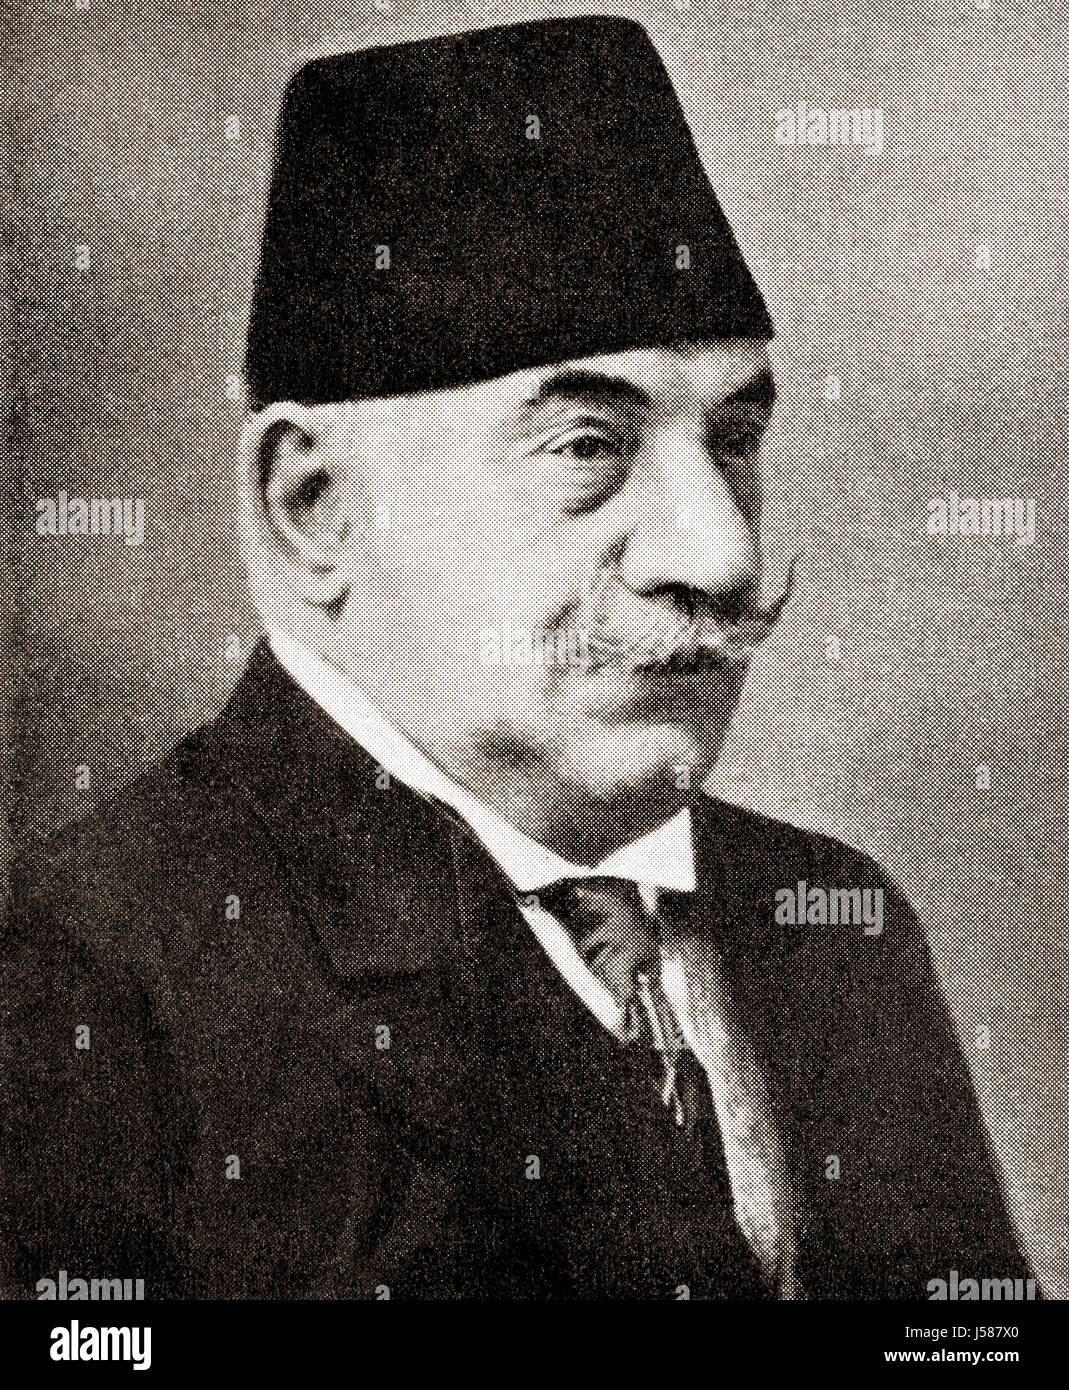 Hüseyin Nazım Pascha, 1848 – 1913. Türkischen Stabschef des Militärs des Ottoman-Reiches während des ersten Balkankrieges.  Hutchinson Geschichte der Nationen veröffentlichte 1915. Stockfoto